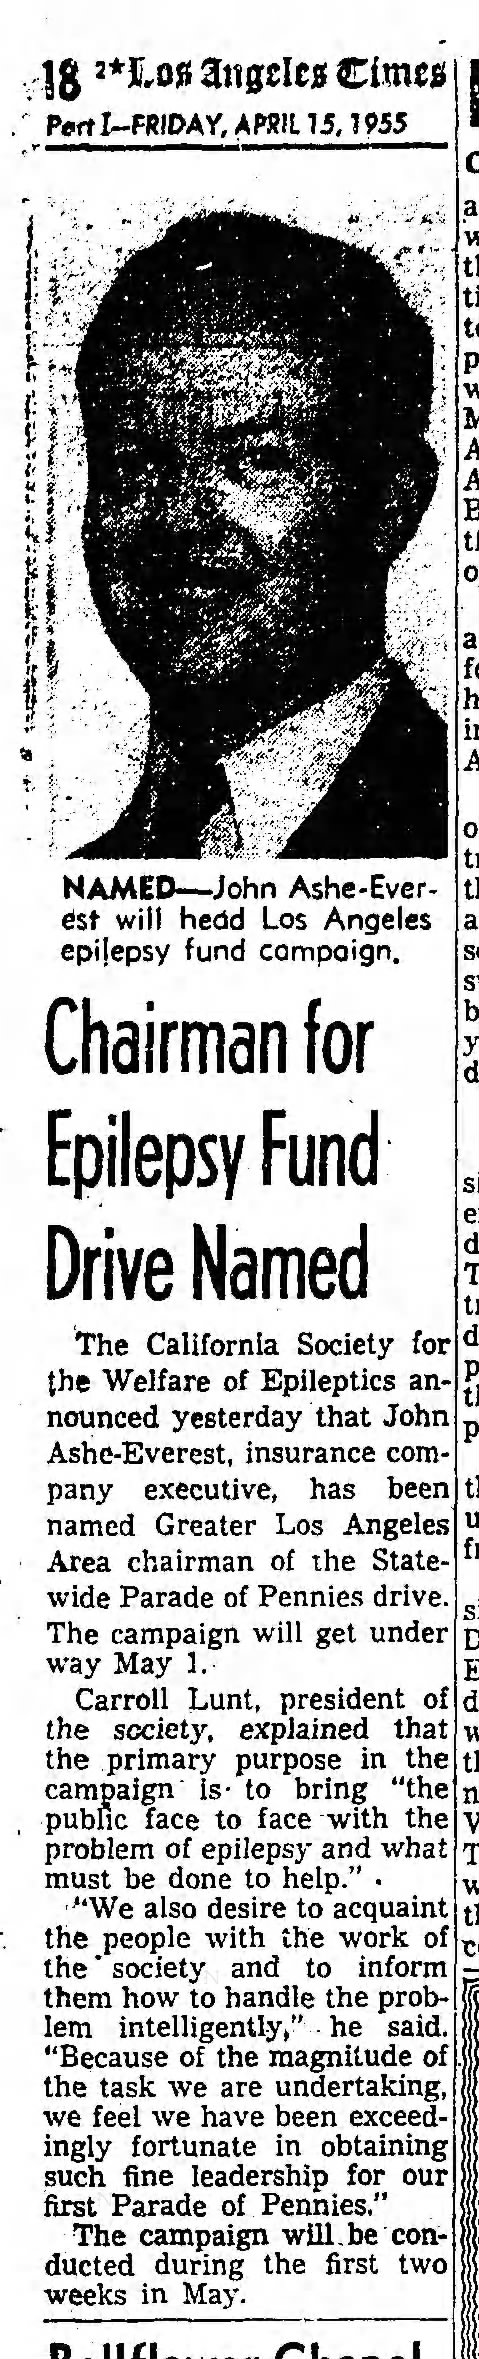 John Ashe-Everest -  Epilepsy Fund